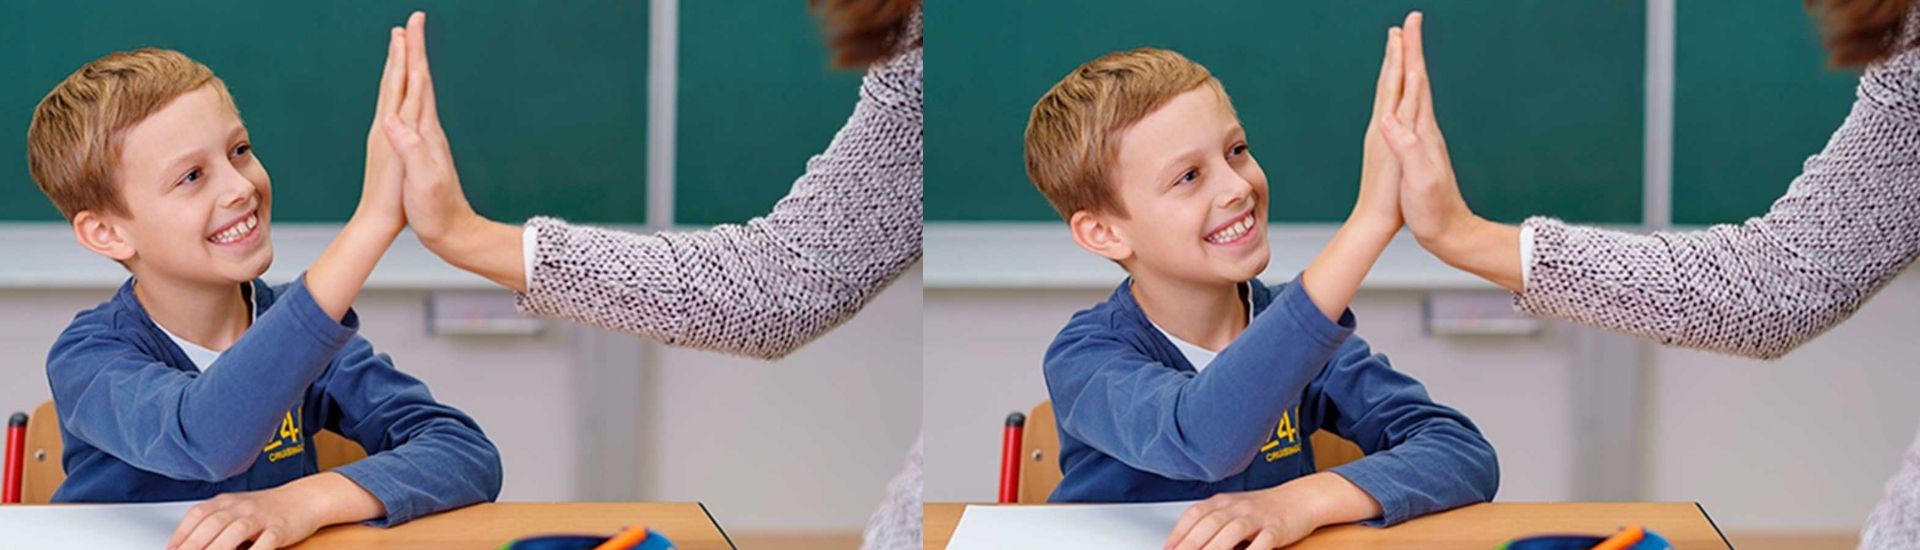 Profesora chocando manos con su estudiante